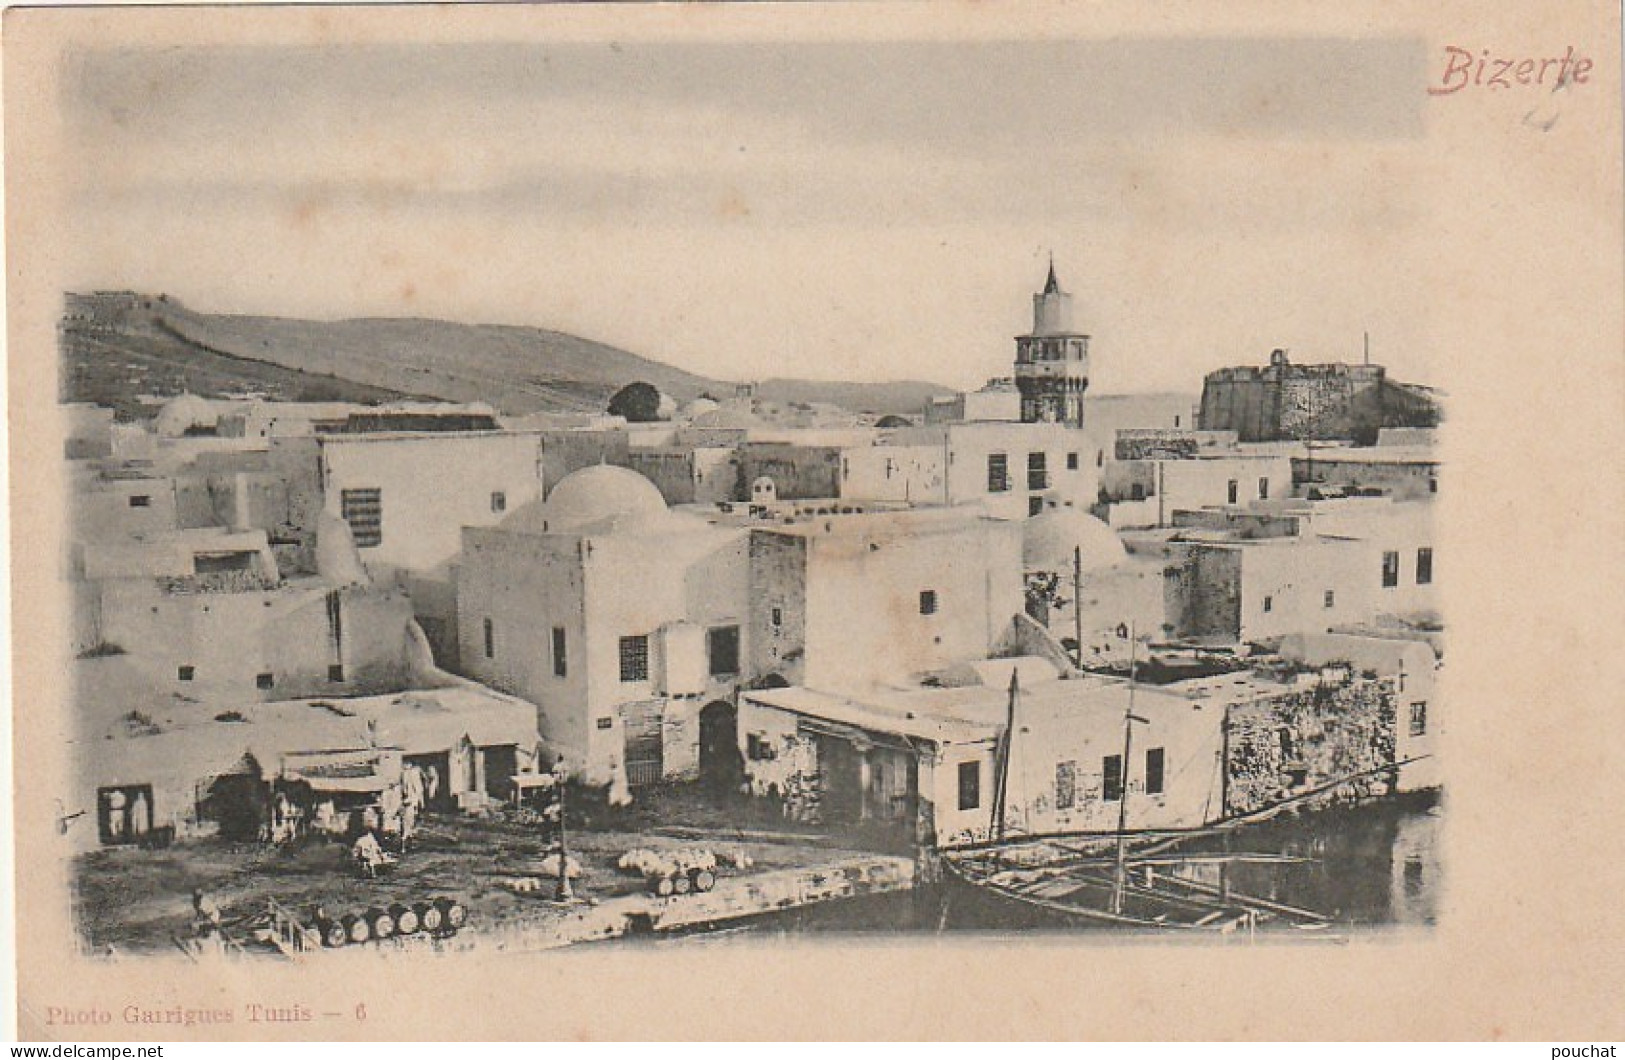 ZY 103- BIZERTE  ( TUNISIE ) - QUARTIER DU VIEUX PORT -  PHOTO GARRIGUES , TUNIS ( N° 6 )- 2 SCANS - Tunisie